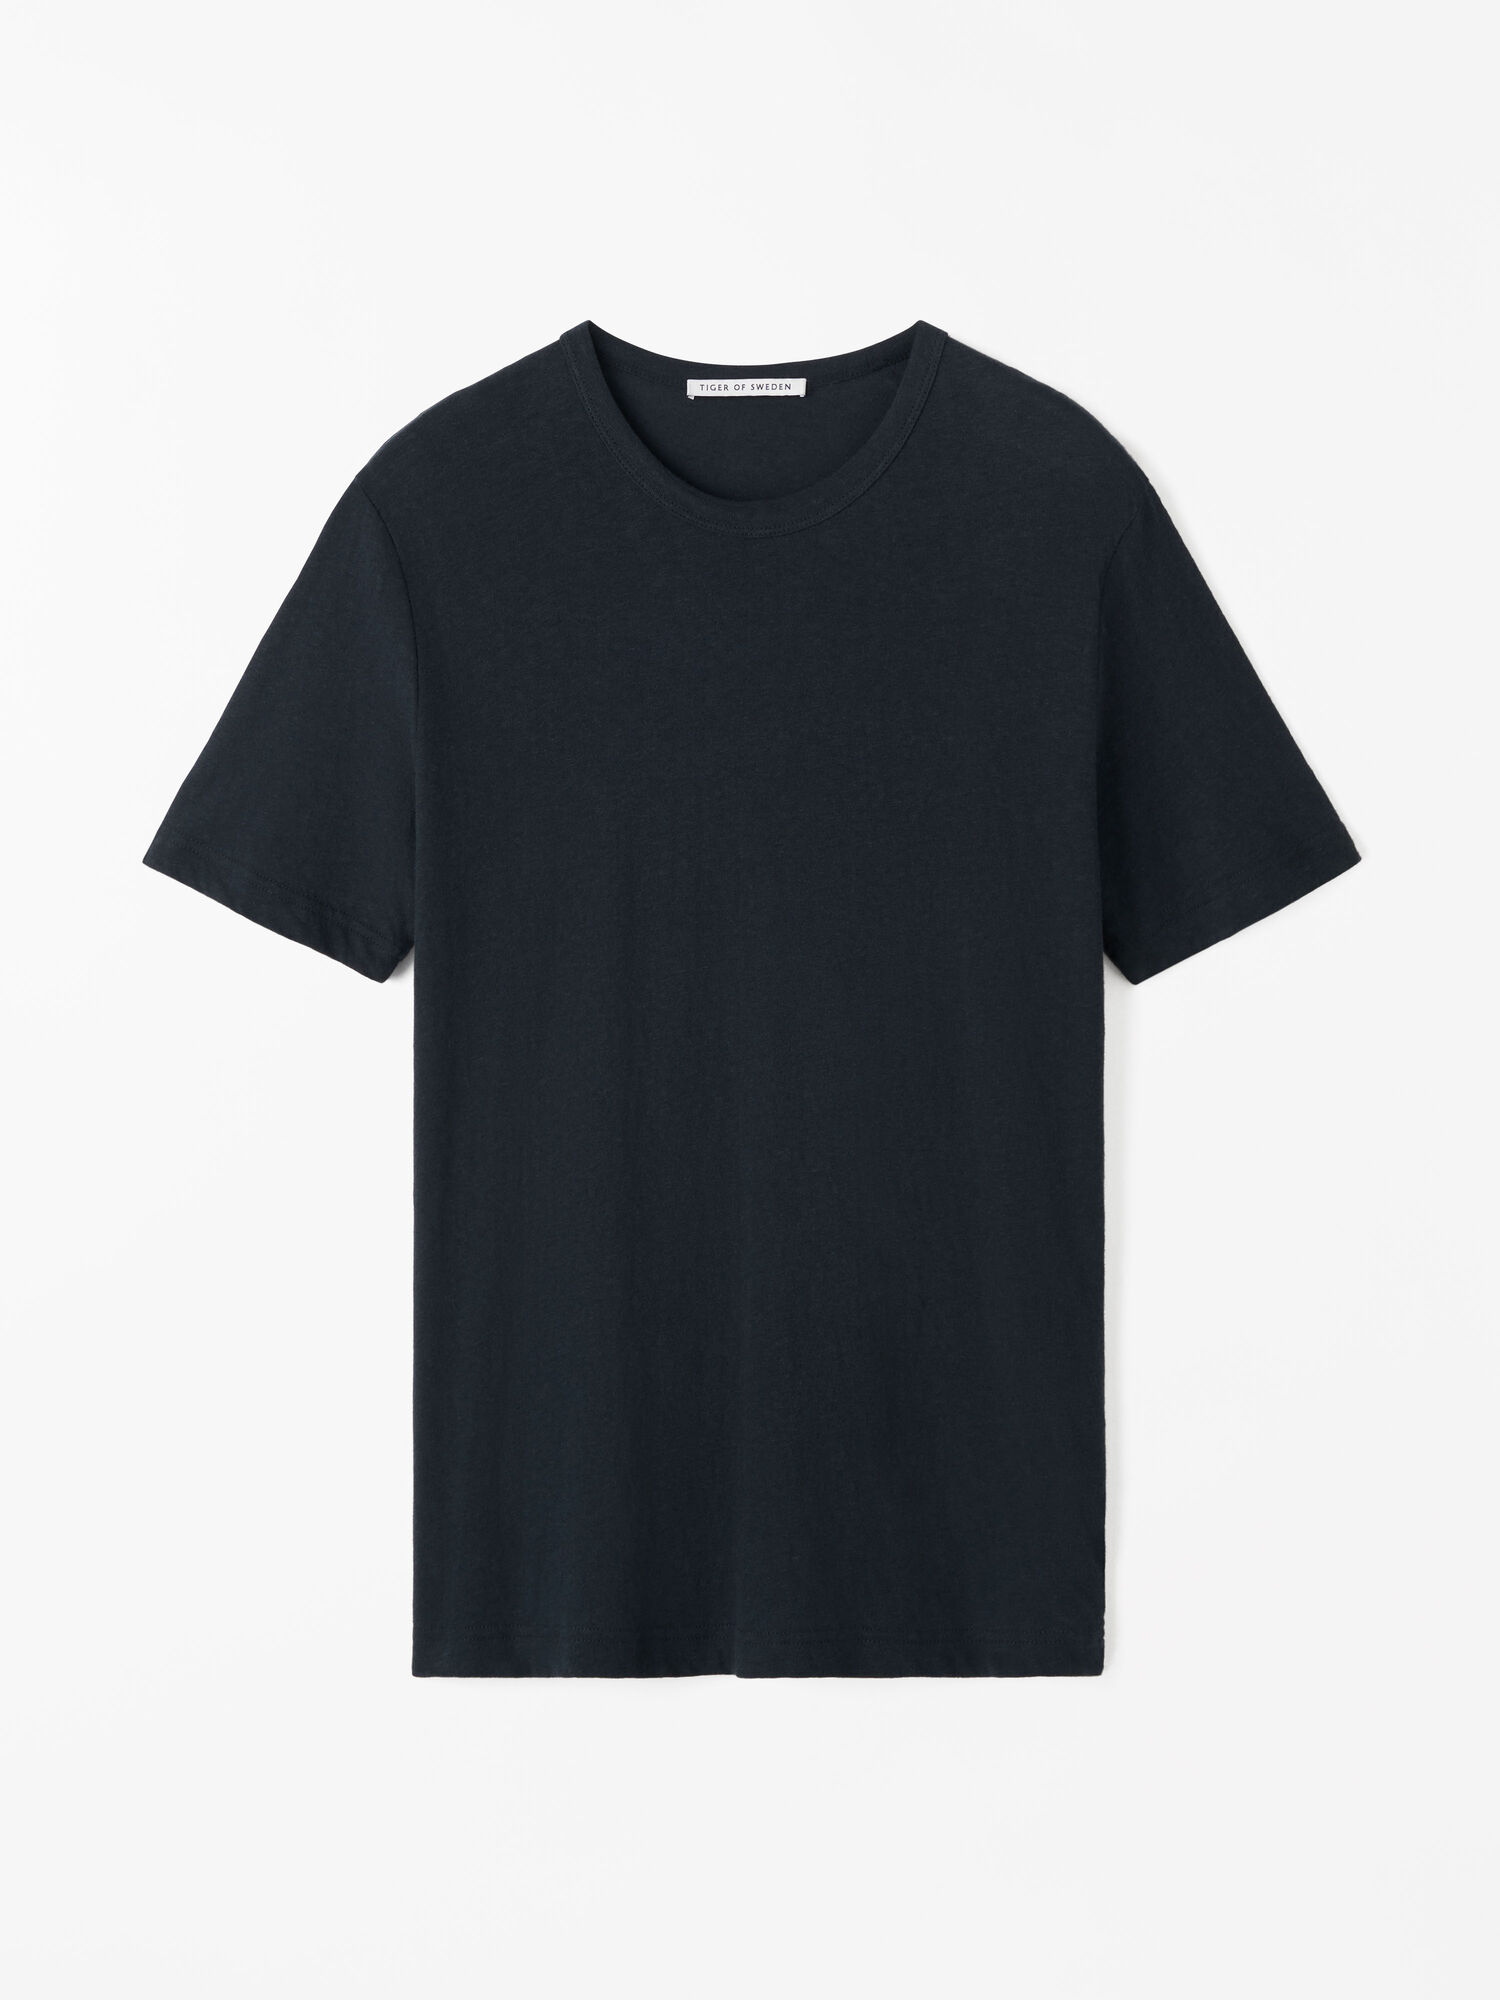 Olaf T-Shirt